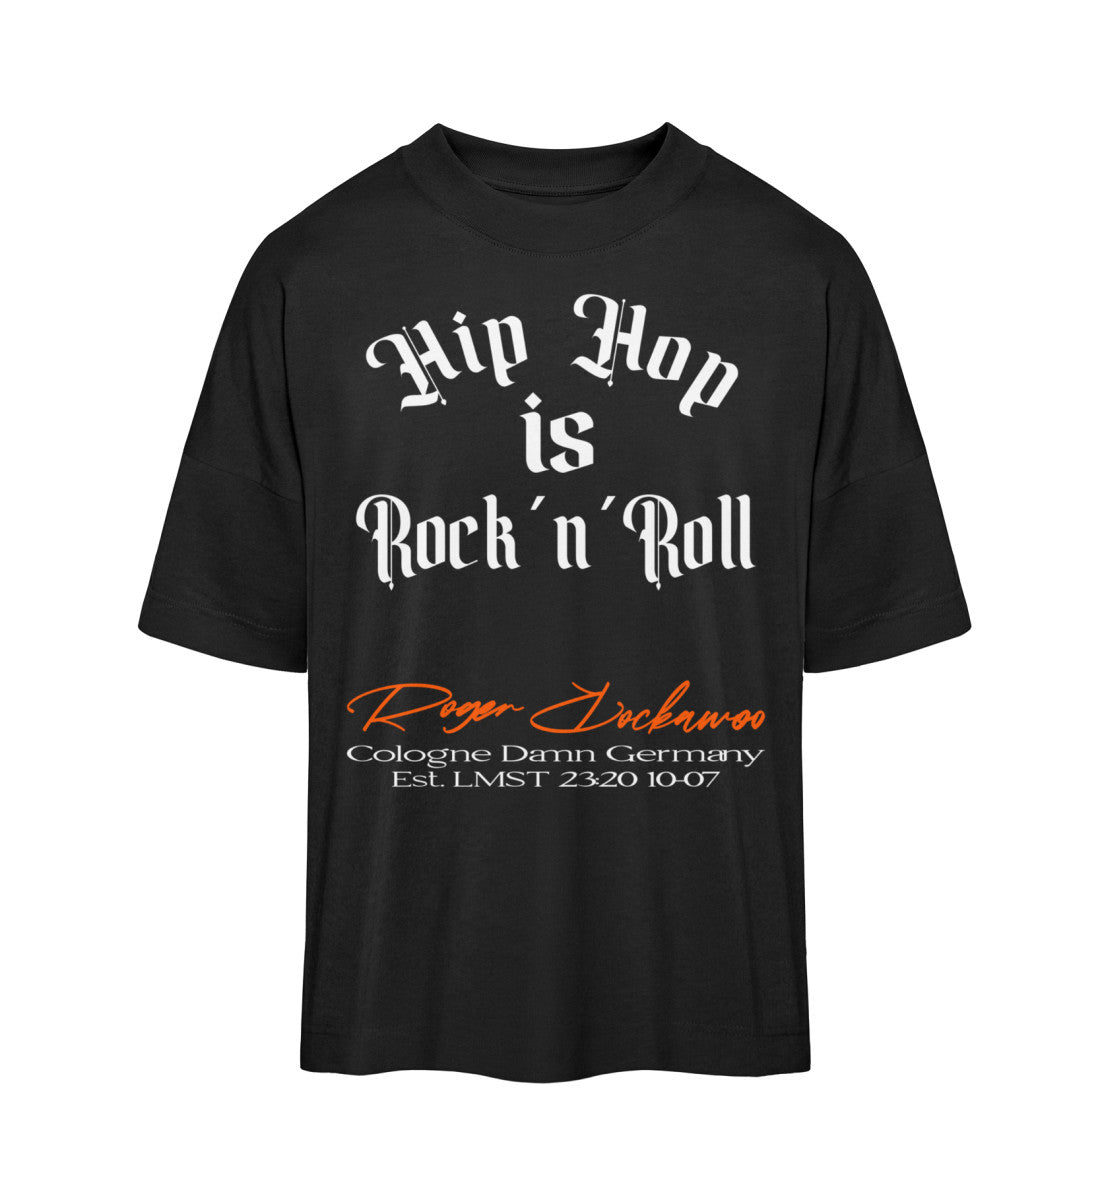 Schwarzes T-Shirt Unisex Oversize Fit für Frauen und Männer bedruckt mit dem Design der Roger Rockawoo Kollektion Hip Hop is Rocknroll